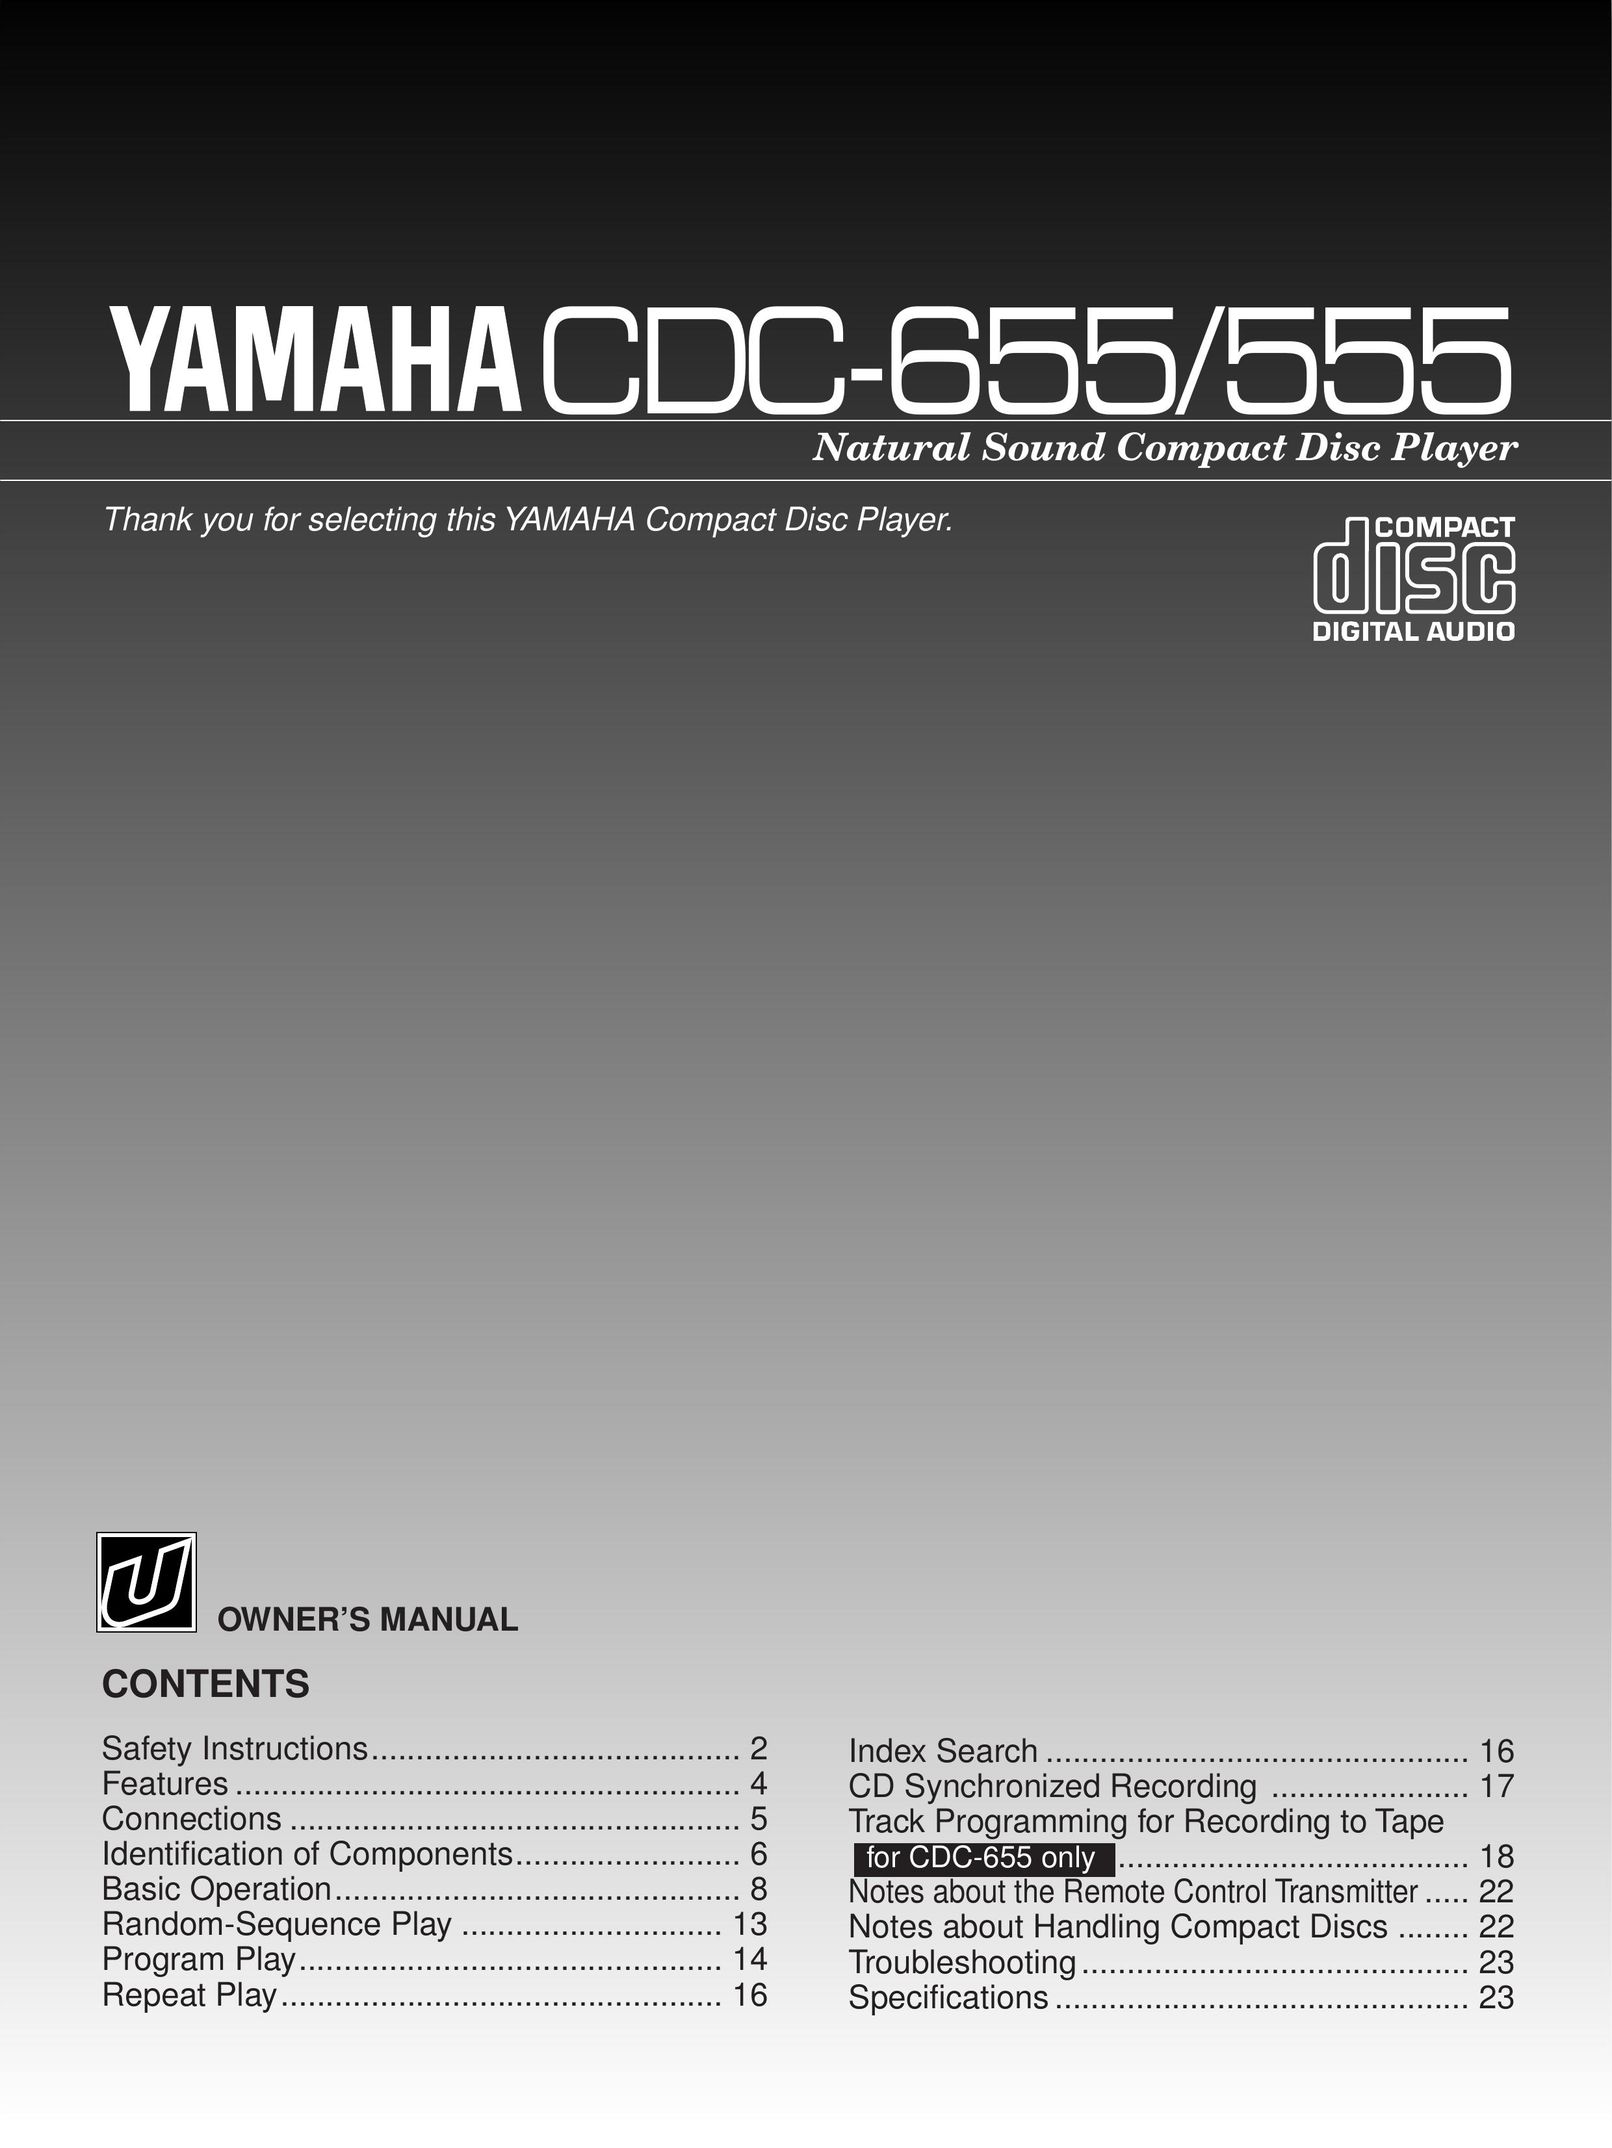 Yamaha CDC-655 CD Player User Manual